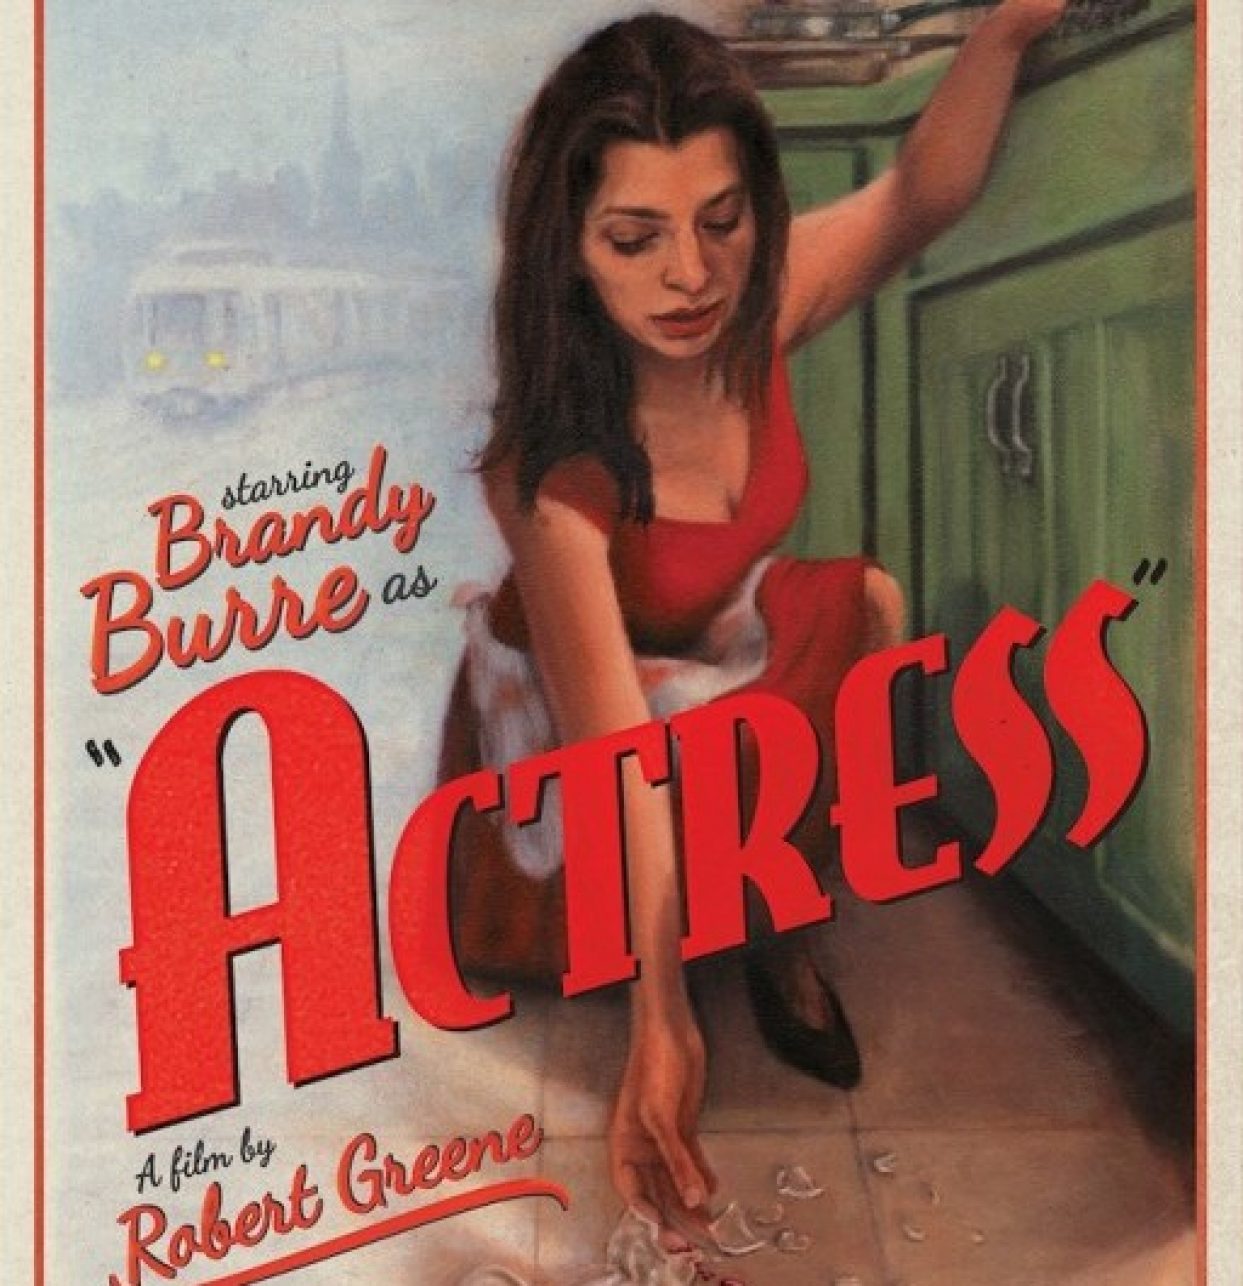 Actress (2014)